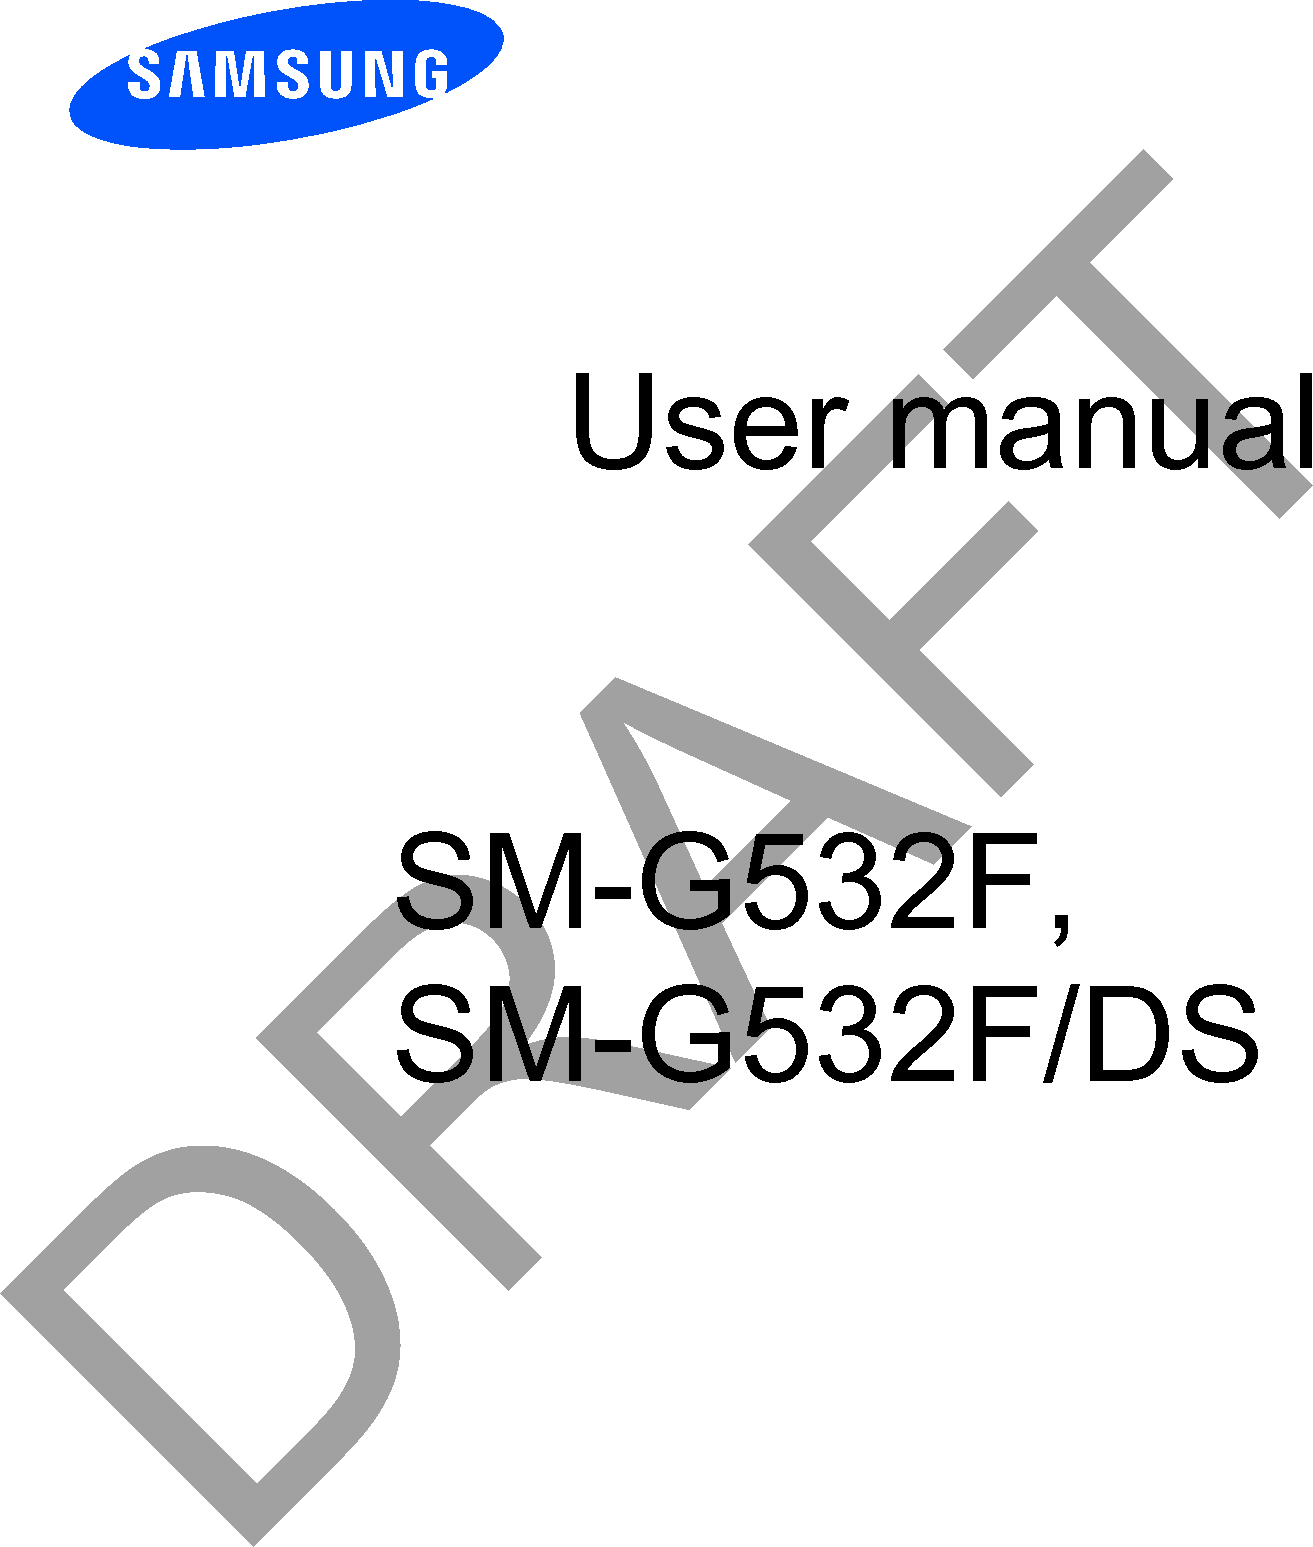 User manualSM-G532F, SM-G532F/DSDRAFT